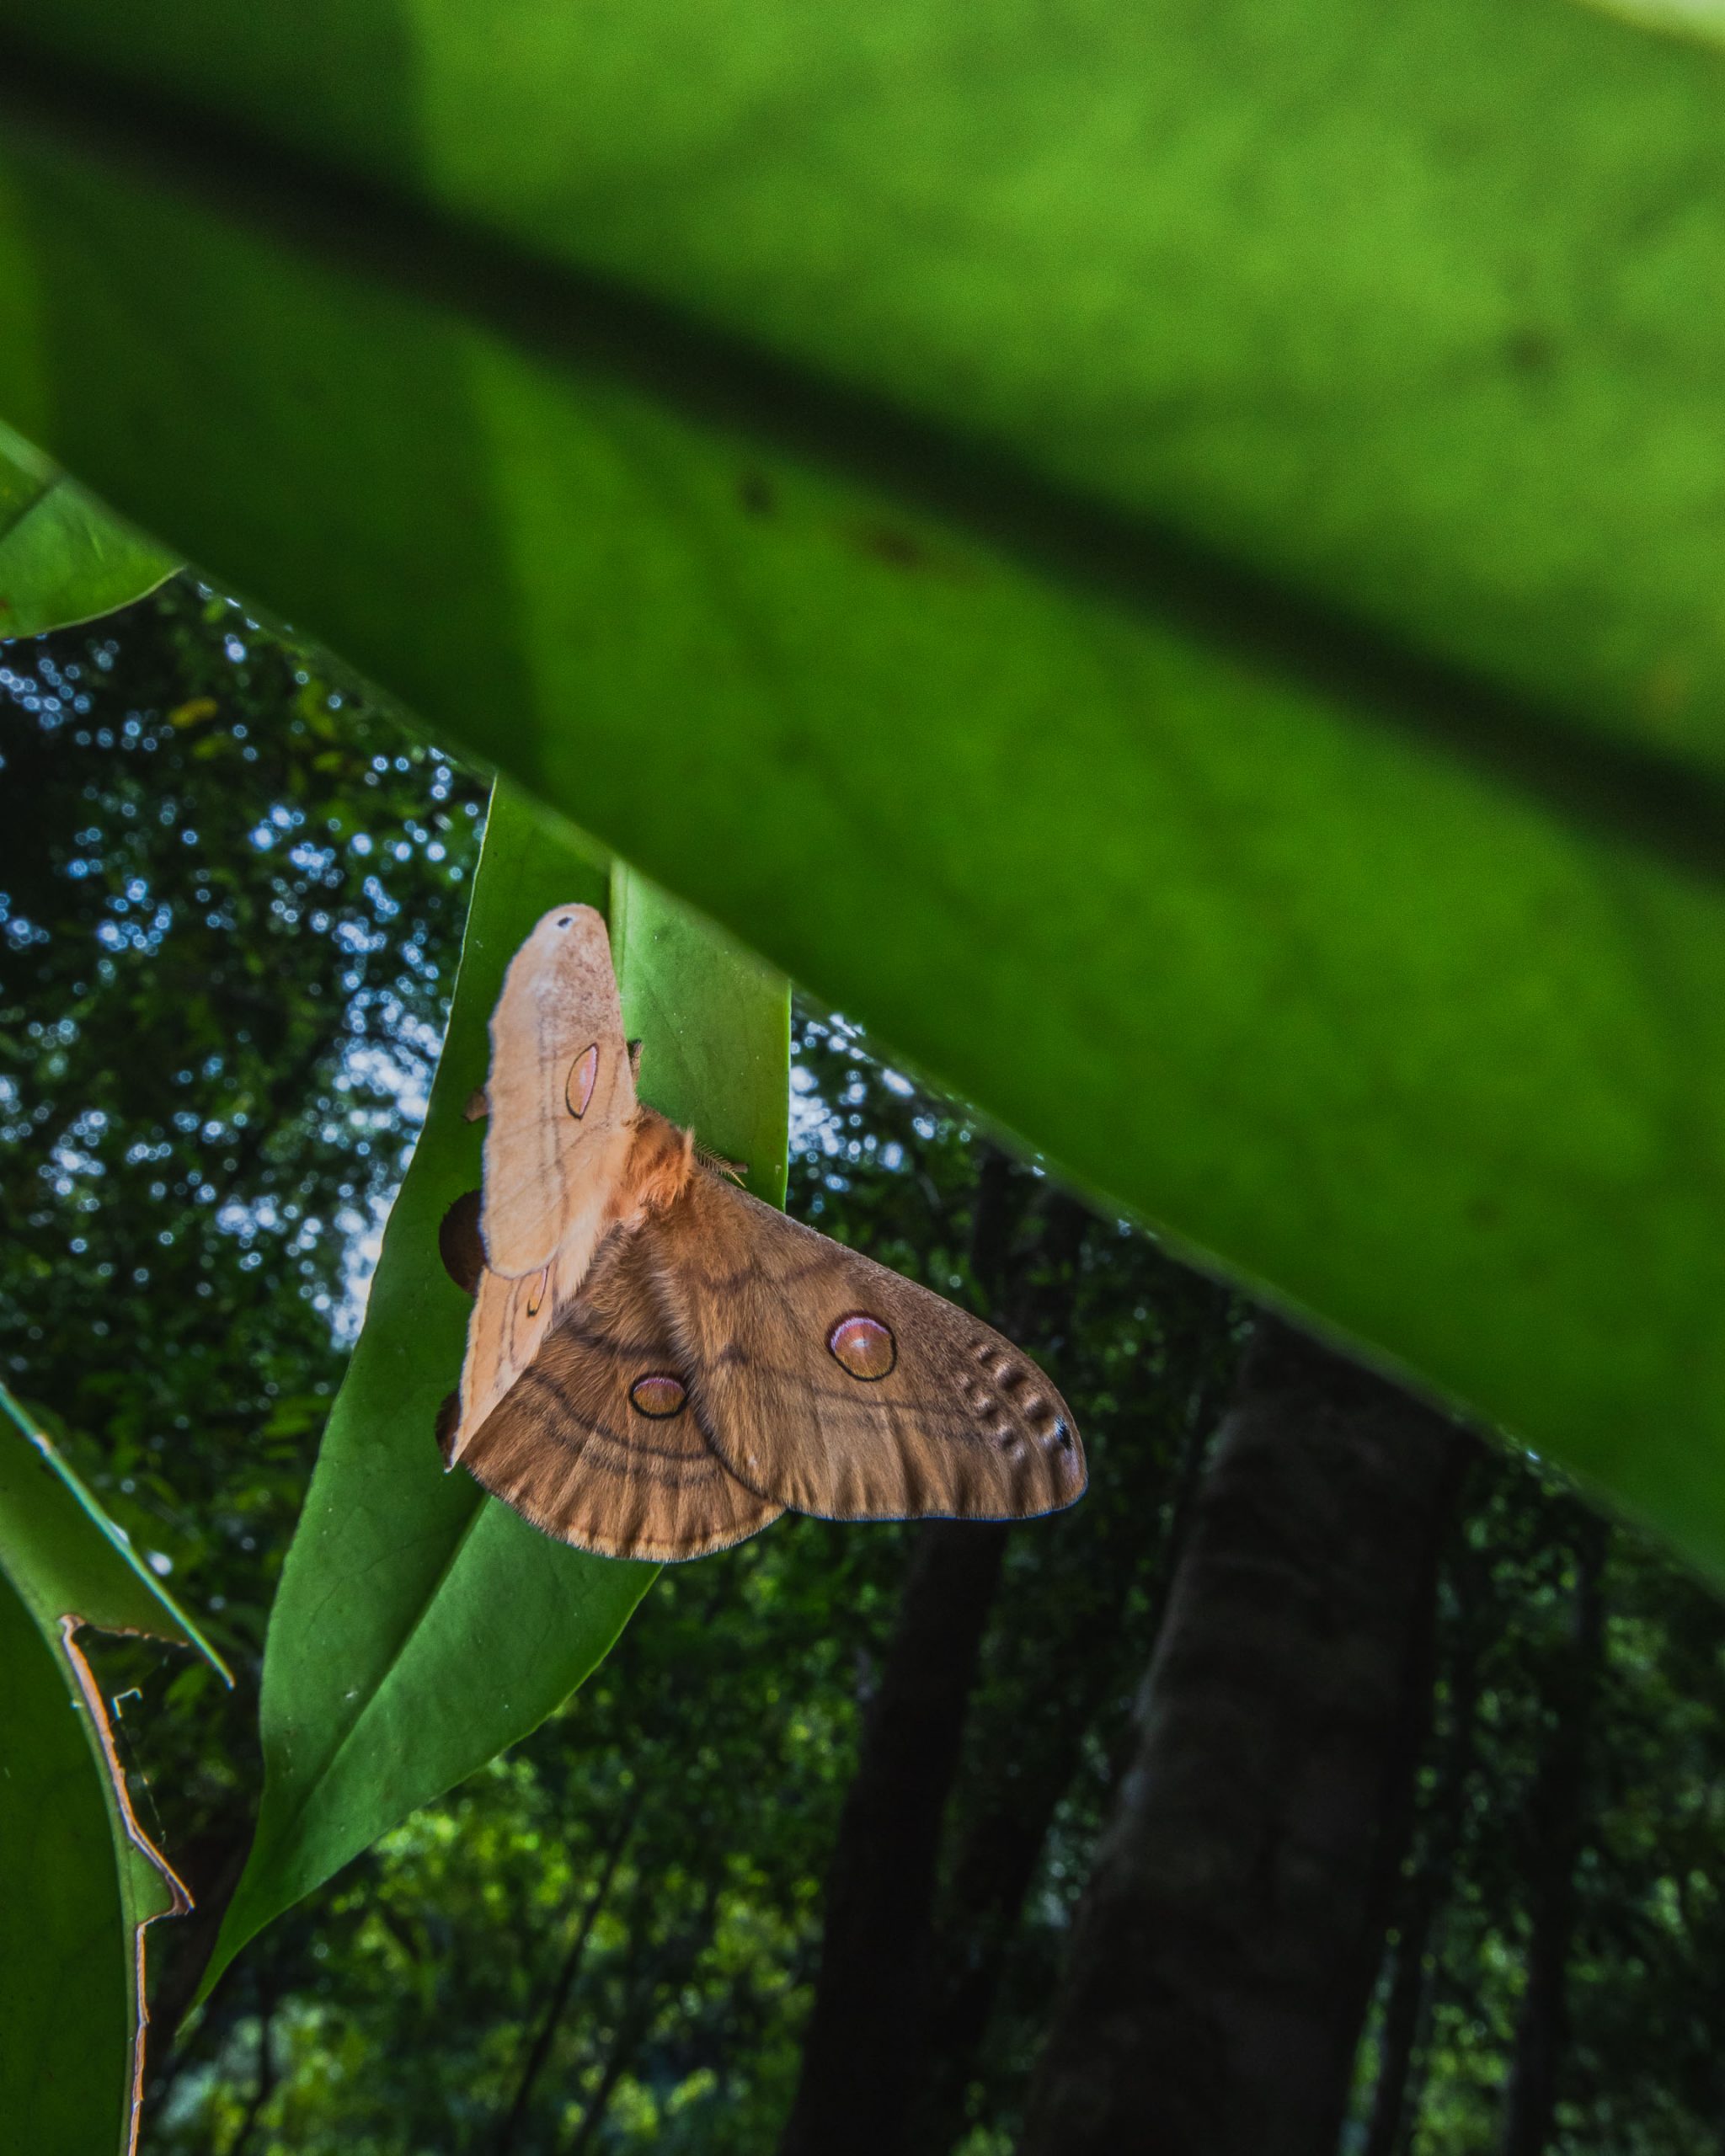 Emperor gum moth. Photo: Alex Pike